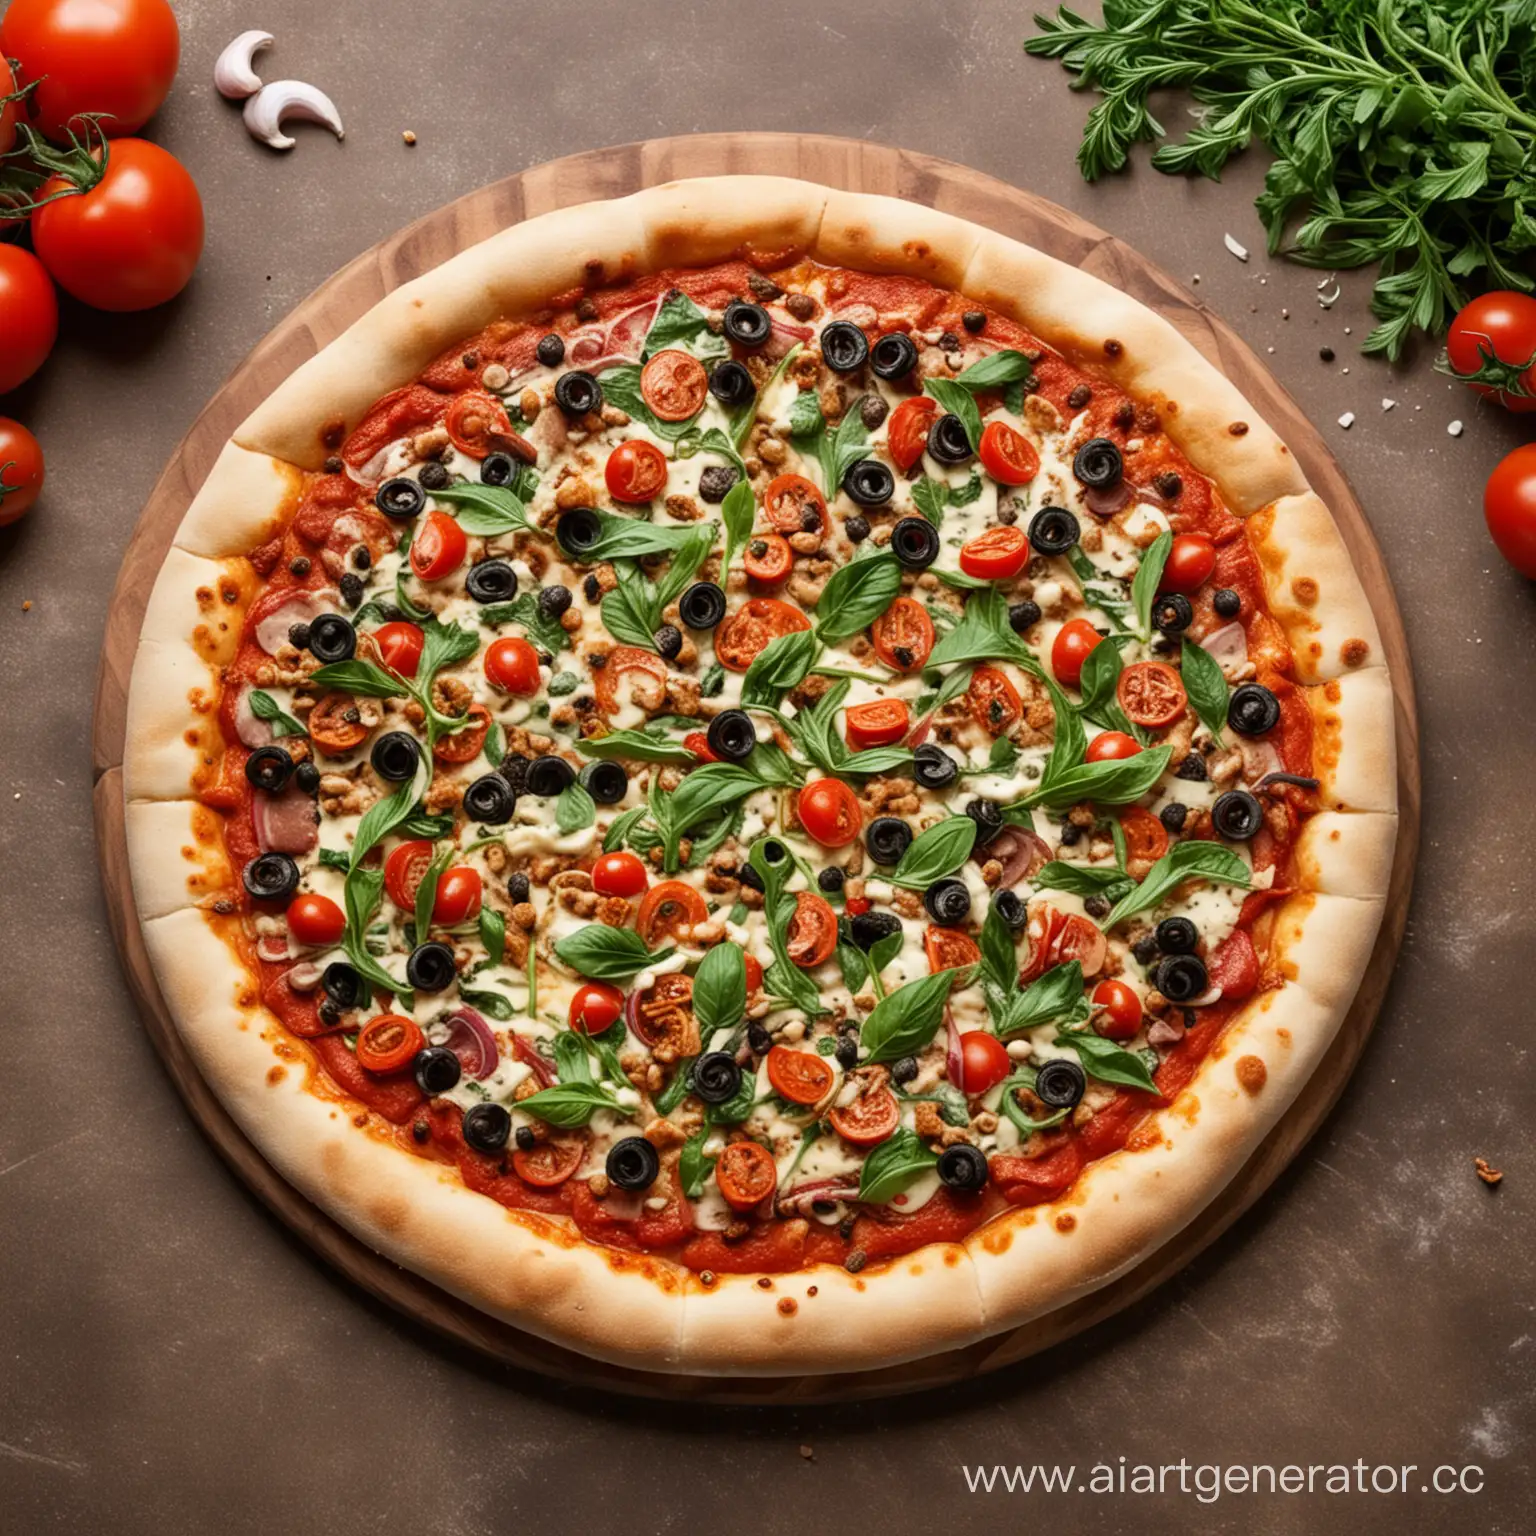 веганская пицца компании додо пицца с новым дизайном. Веганская пицца - пицца, в котором отсутствуют продукты животног опроисхождения